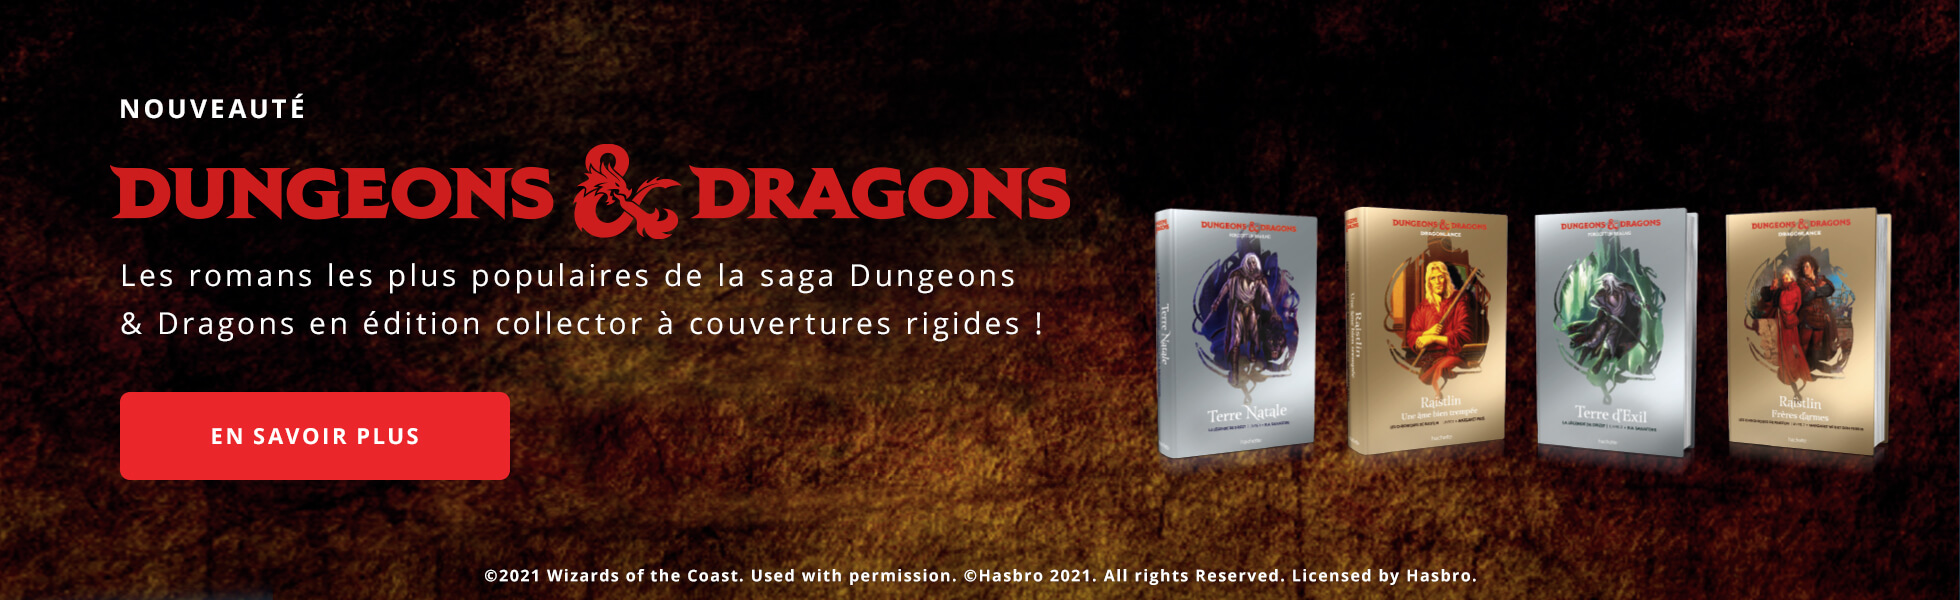 Donjons & Dragons les romans en édition collector !